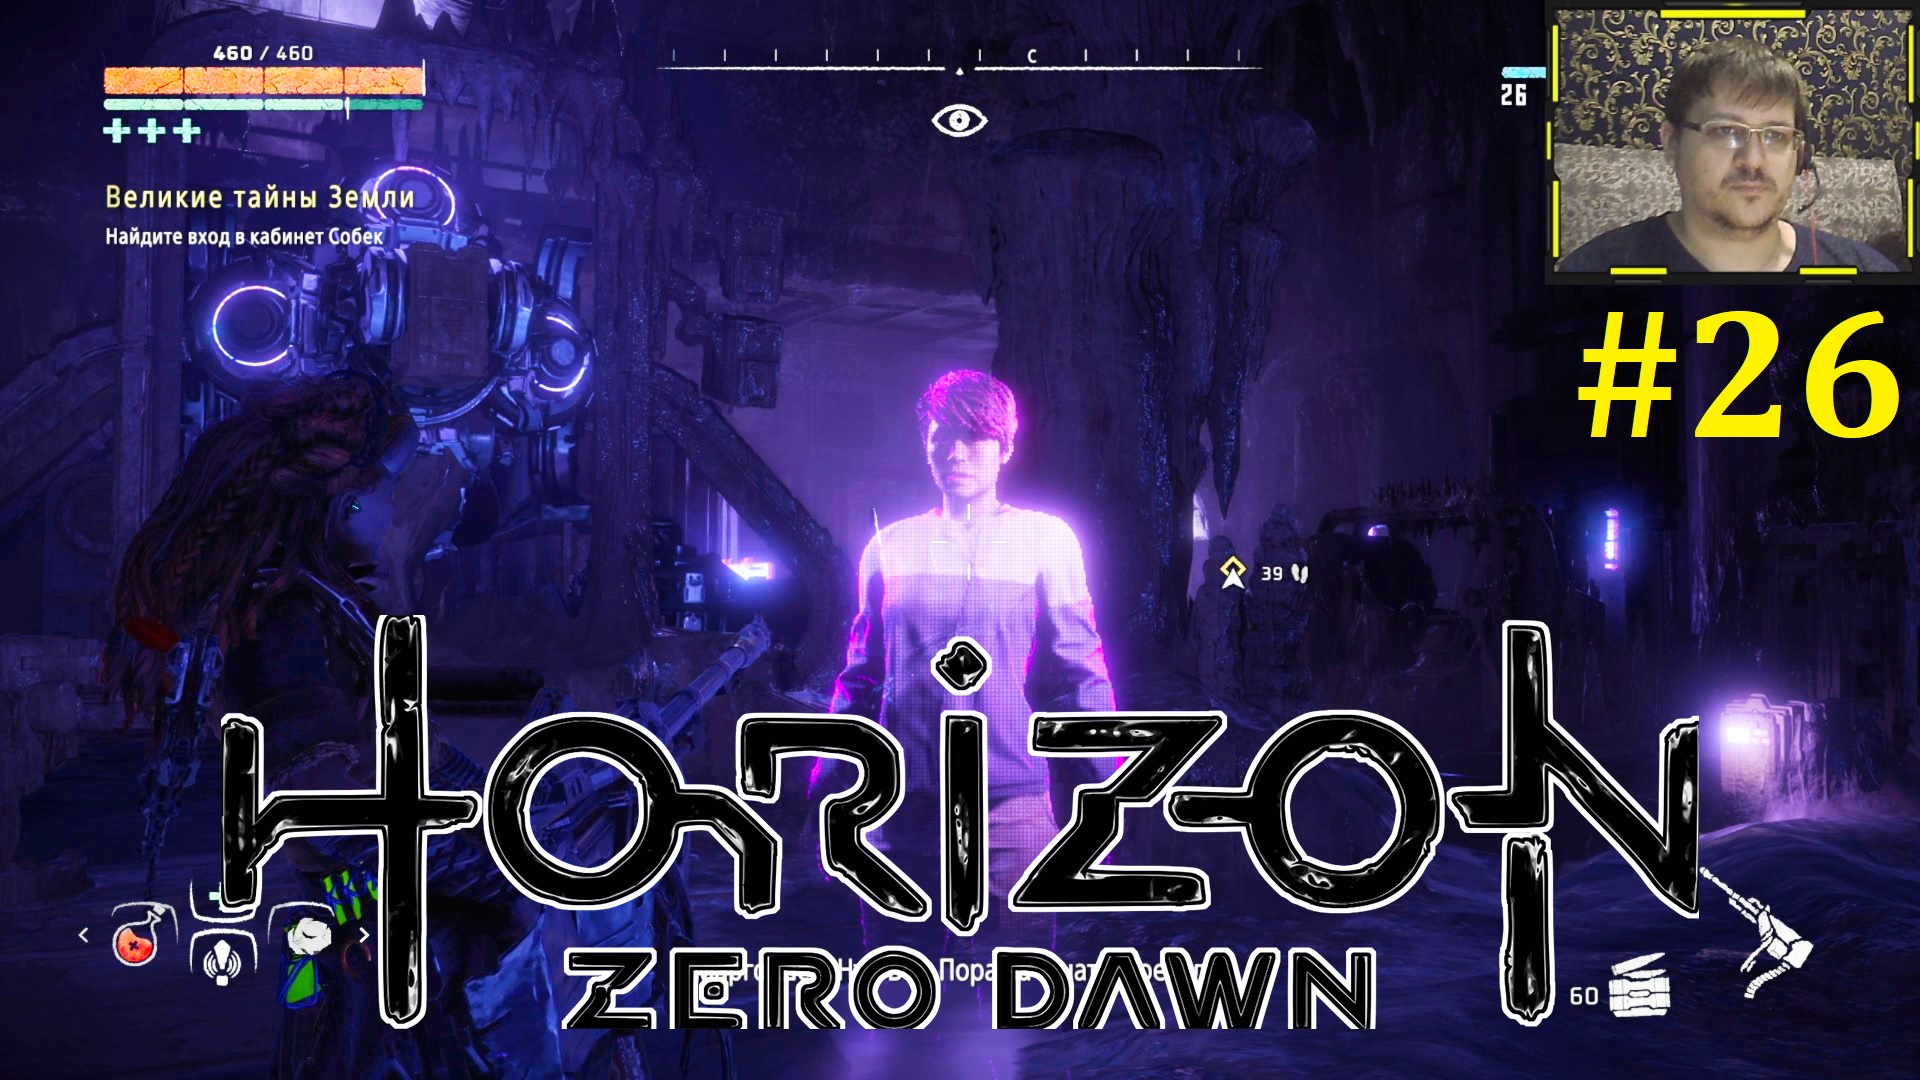 Великая тайна земли Horizon Zero Dawn голографический код. Горизонт Зеро давн прохождение мавзолей.